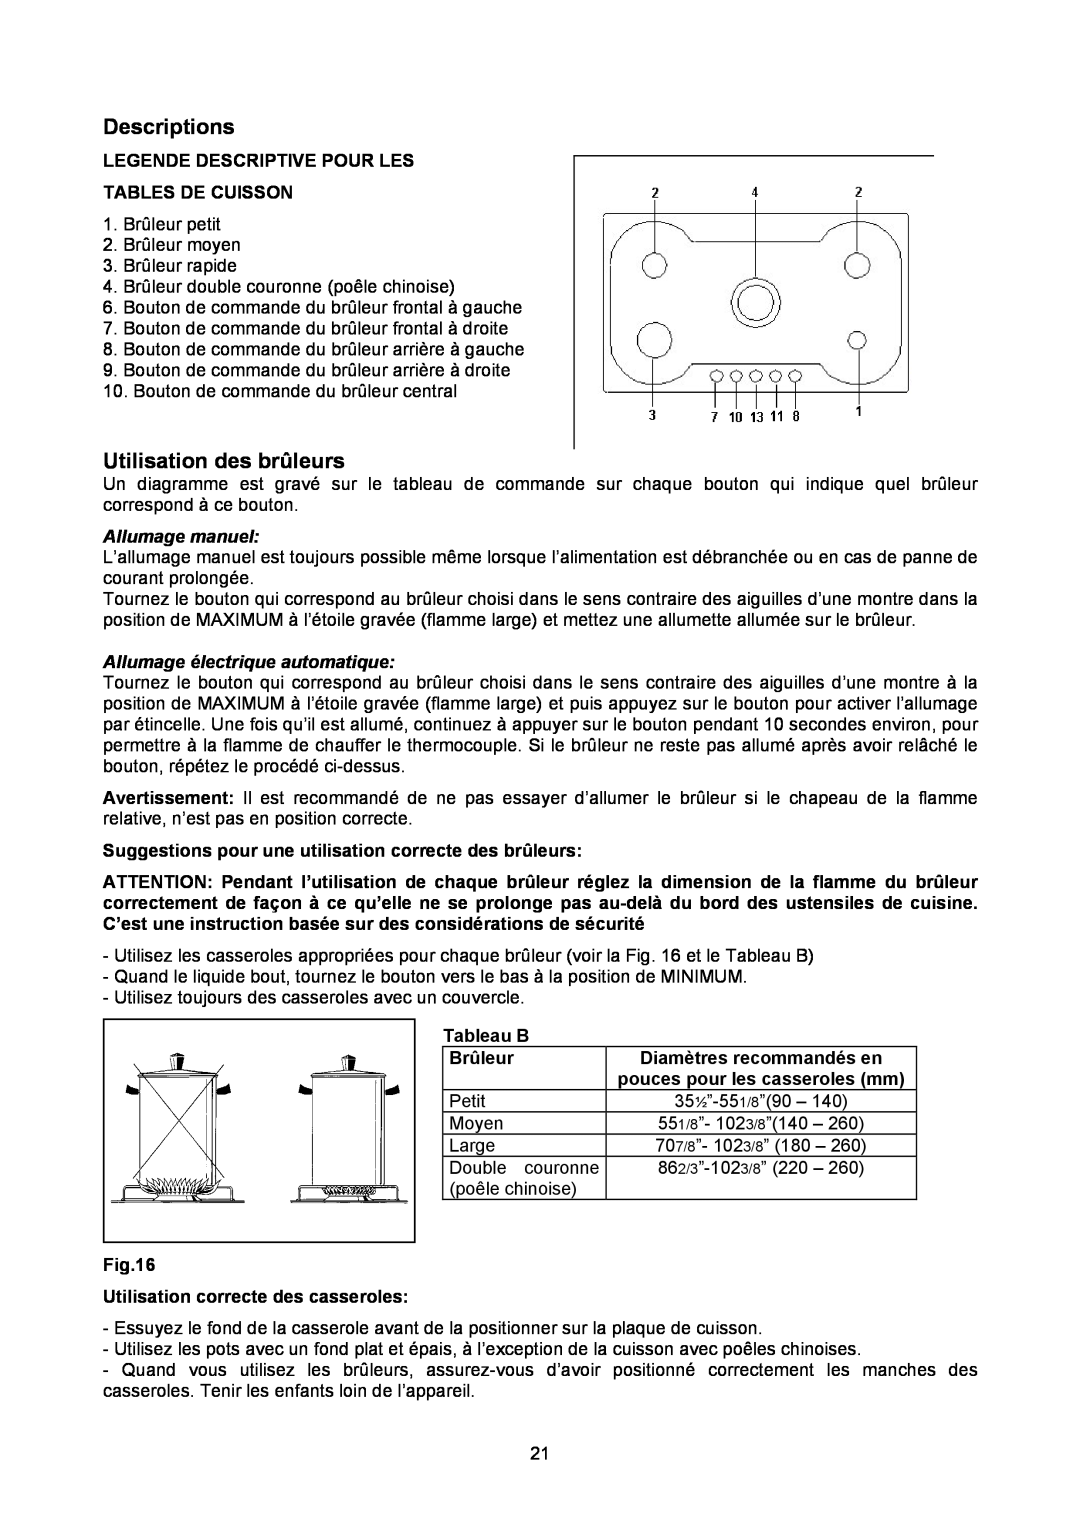 Bertazzoni P34 5 00 X Utilisation des brûleurs, Allumage manuel, Allumage électrique automatique, Descriptions, Tableau B 